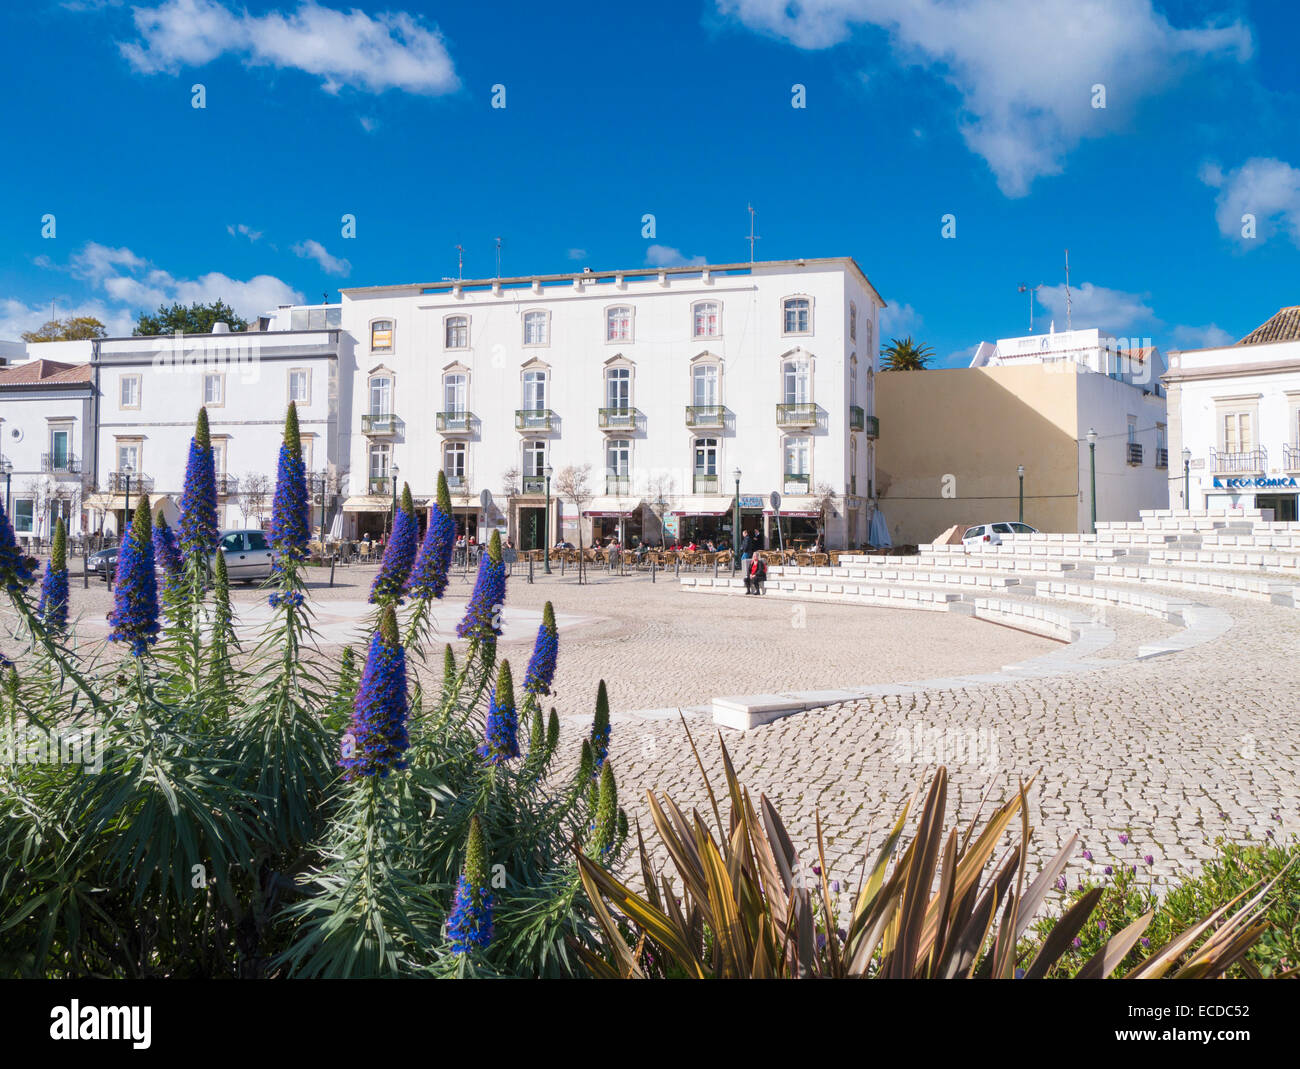 Praca da Republica, Tavira, Algarve, Portugal, Februar 2014 Stockfoto